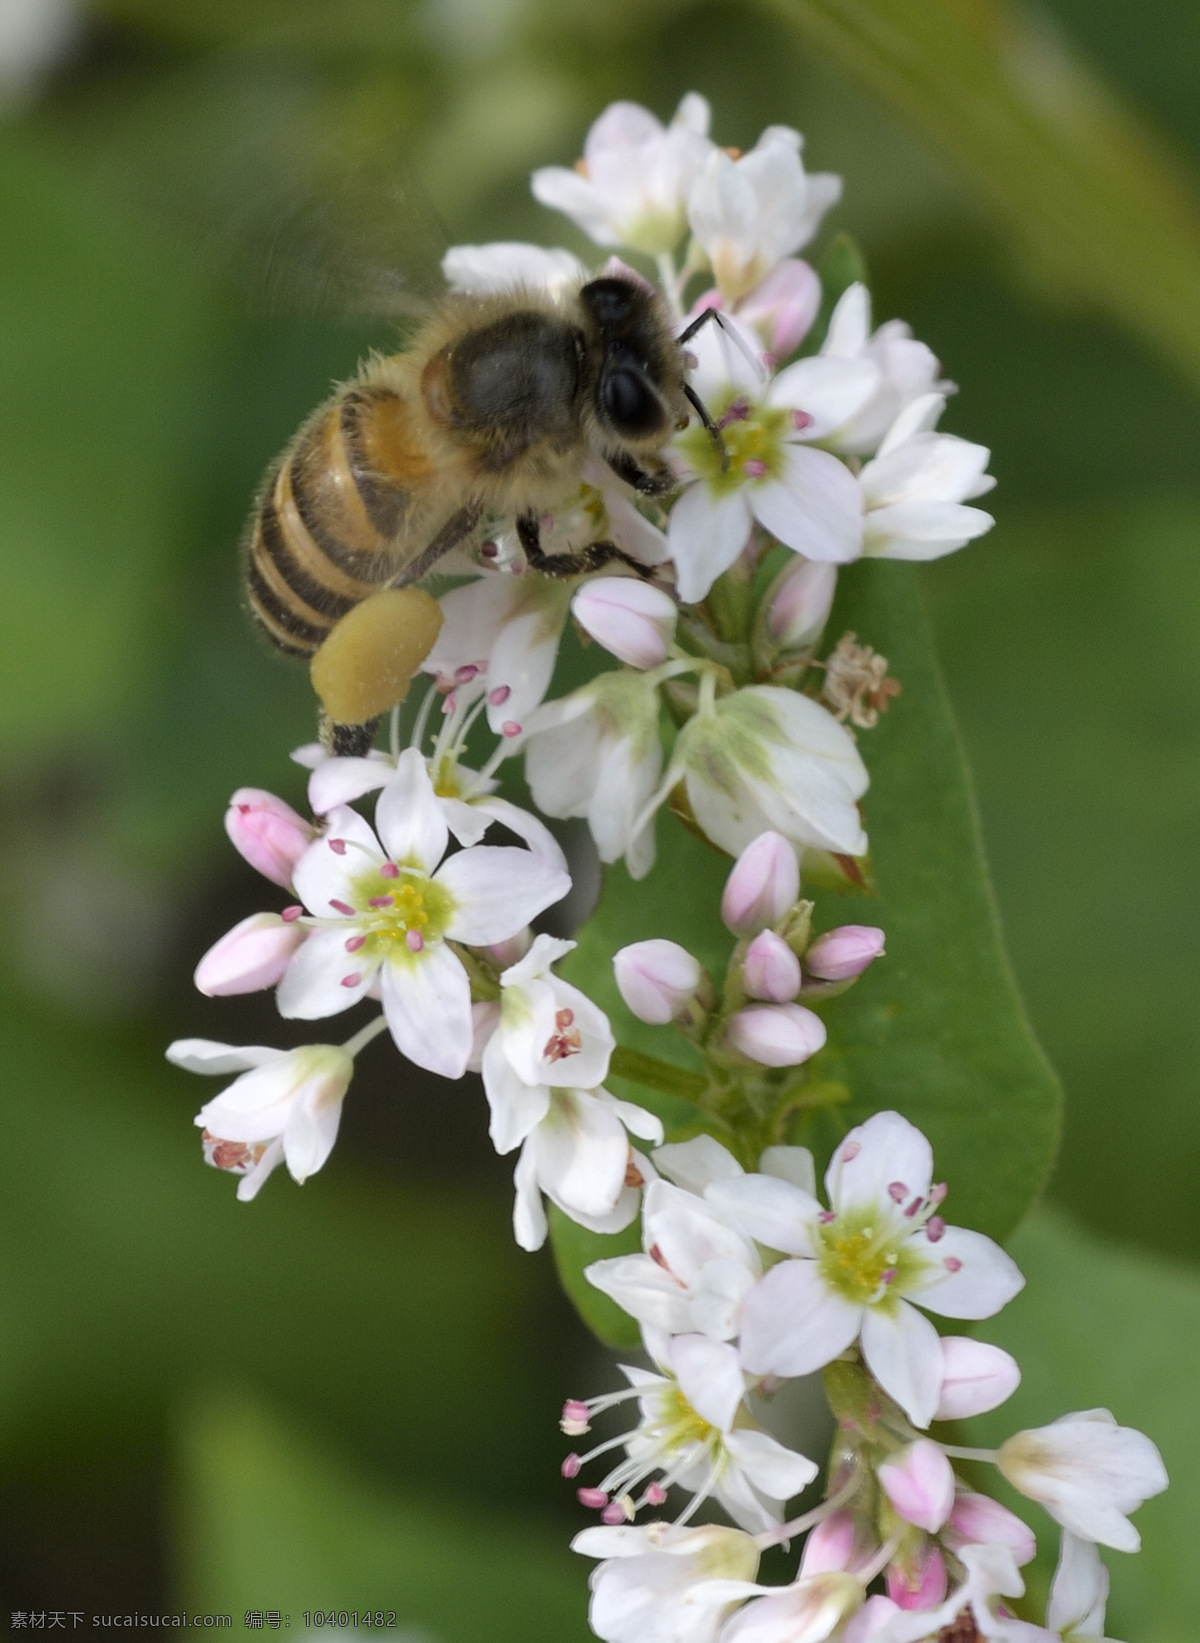 蜜蜂采蜜 蜜蜂 采蜜 花蜜 花粉 花朵 白花 荞麦花 昆虫 生物世界